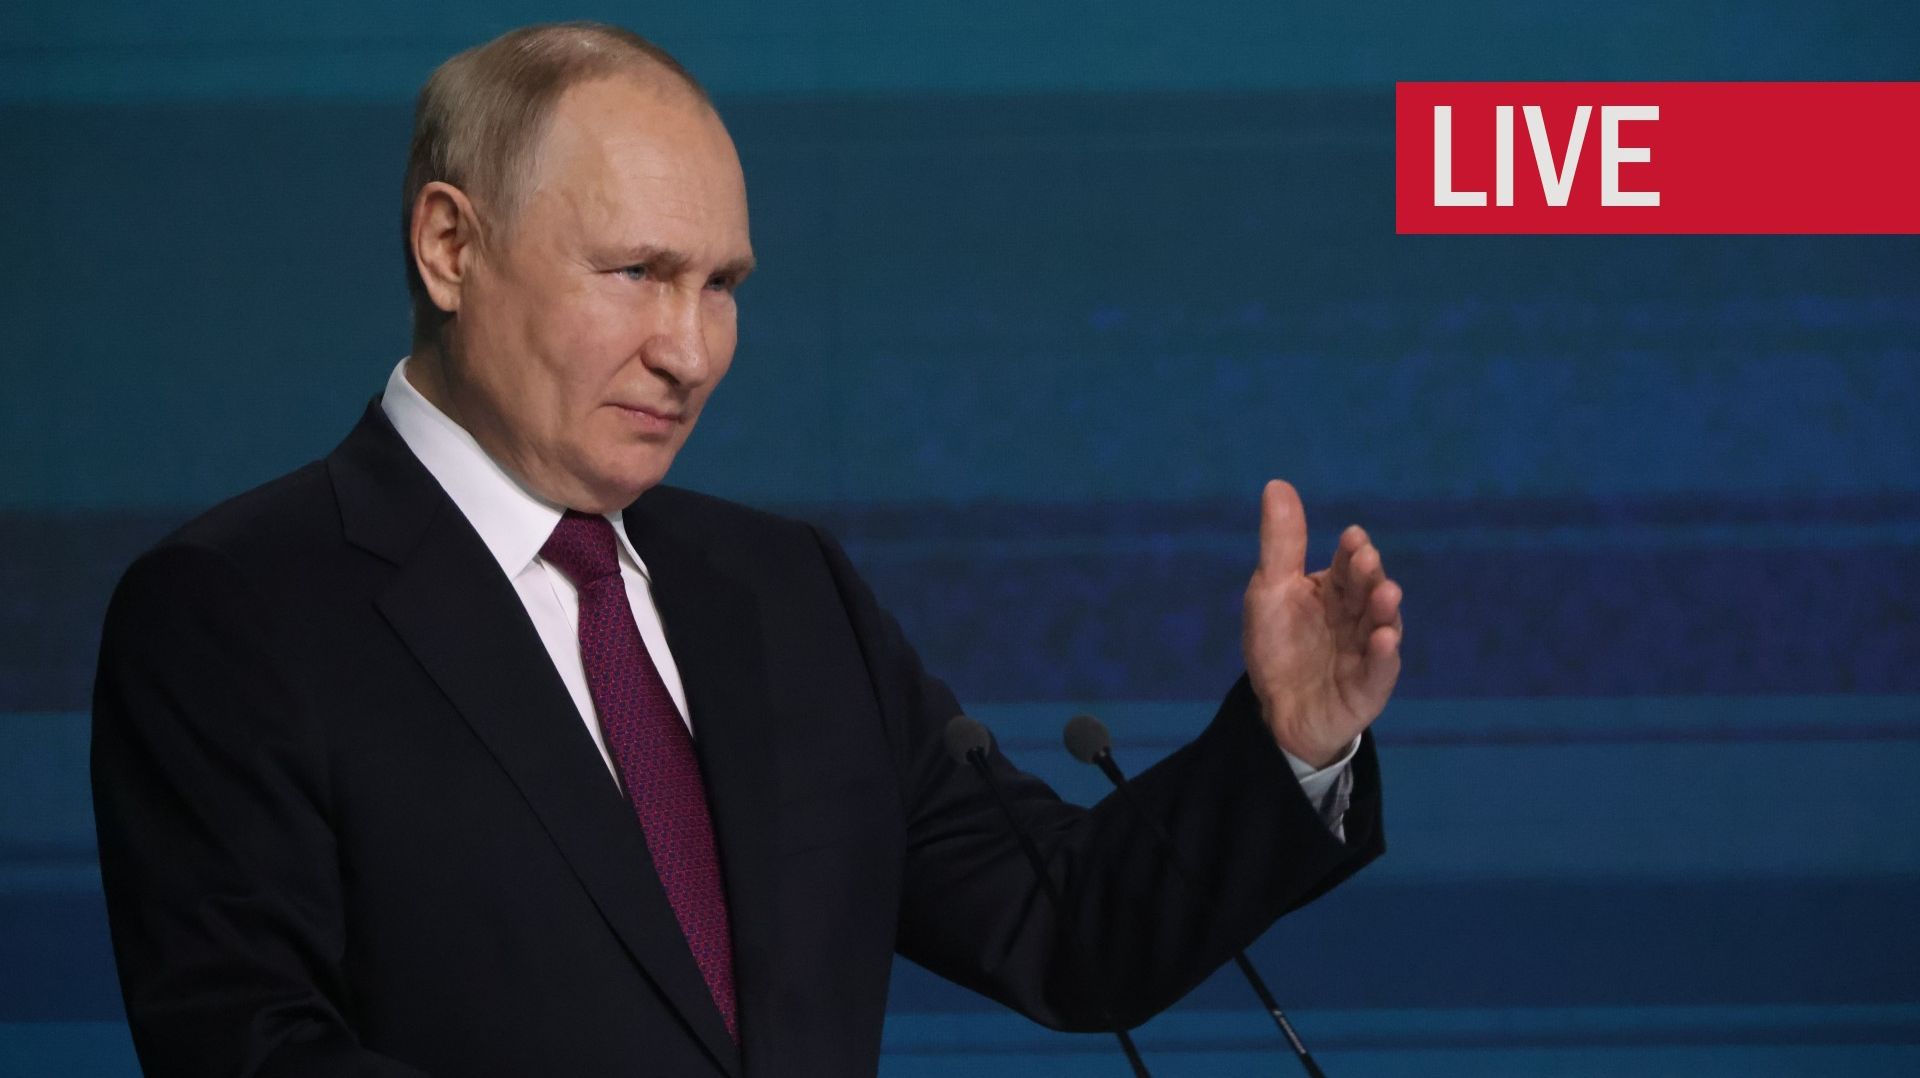 Guerra diretta in Ucraina: Putin ha confermato che avrebbe usato armi nucleari solo in risposta a un attacco nemico